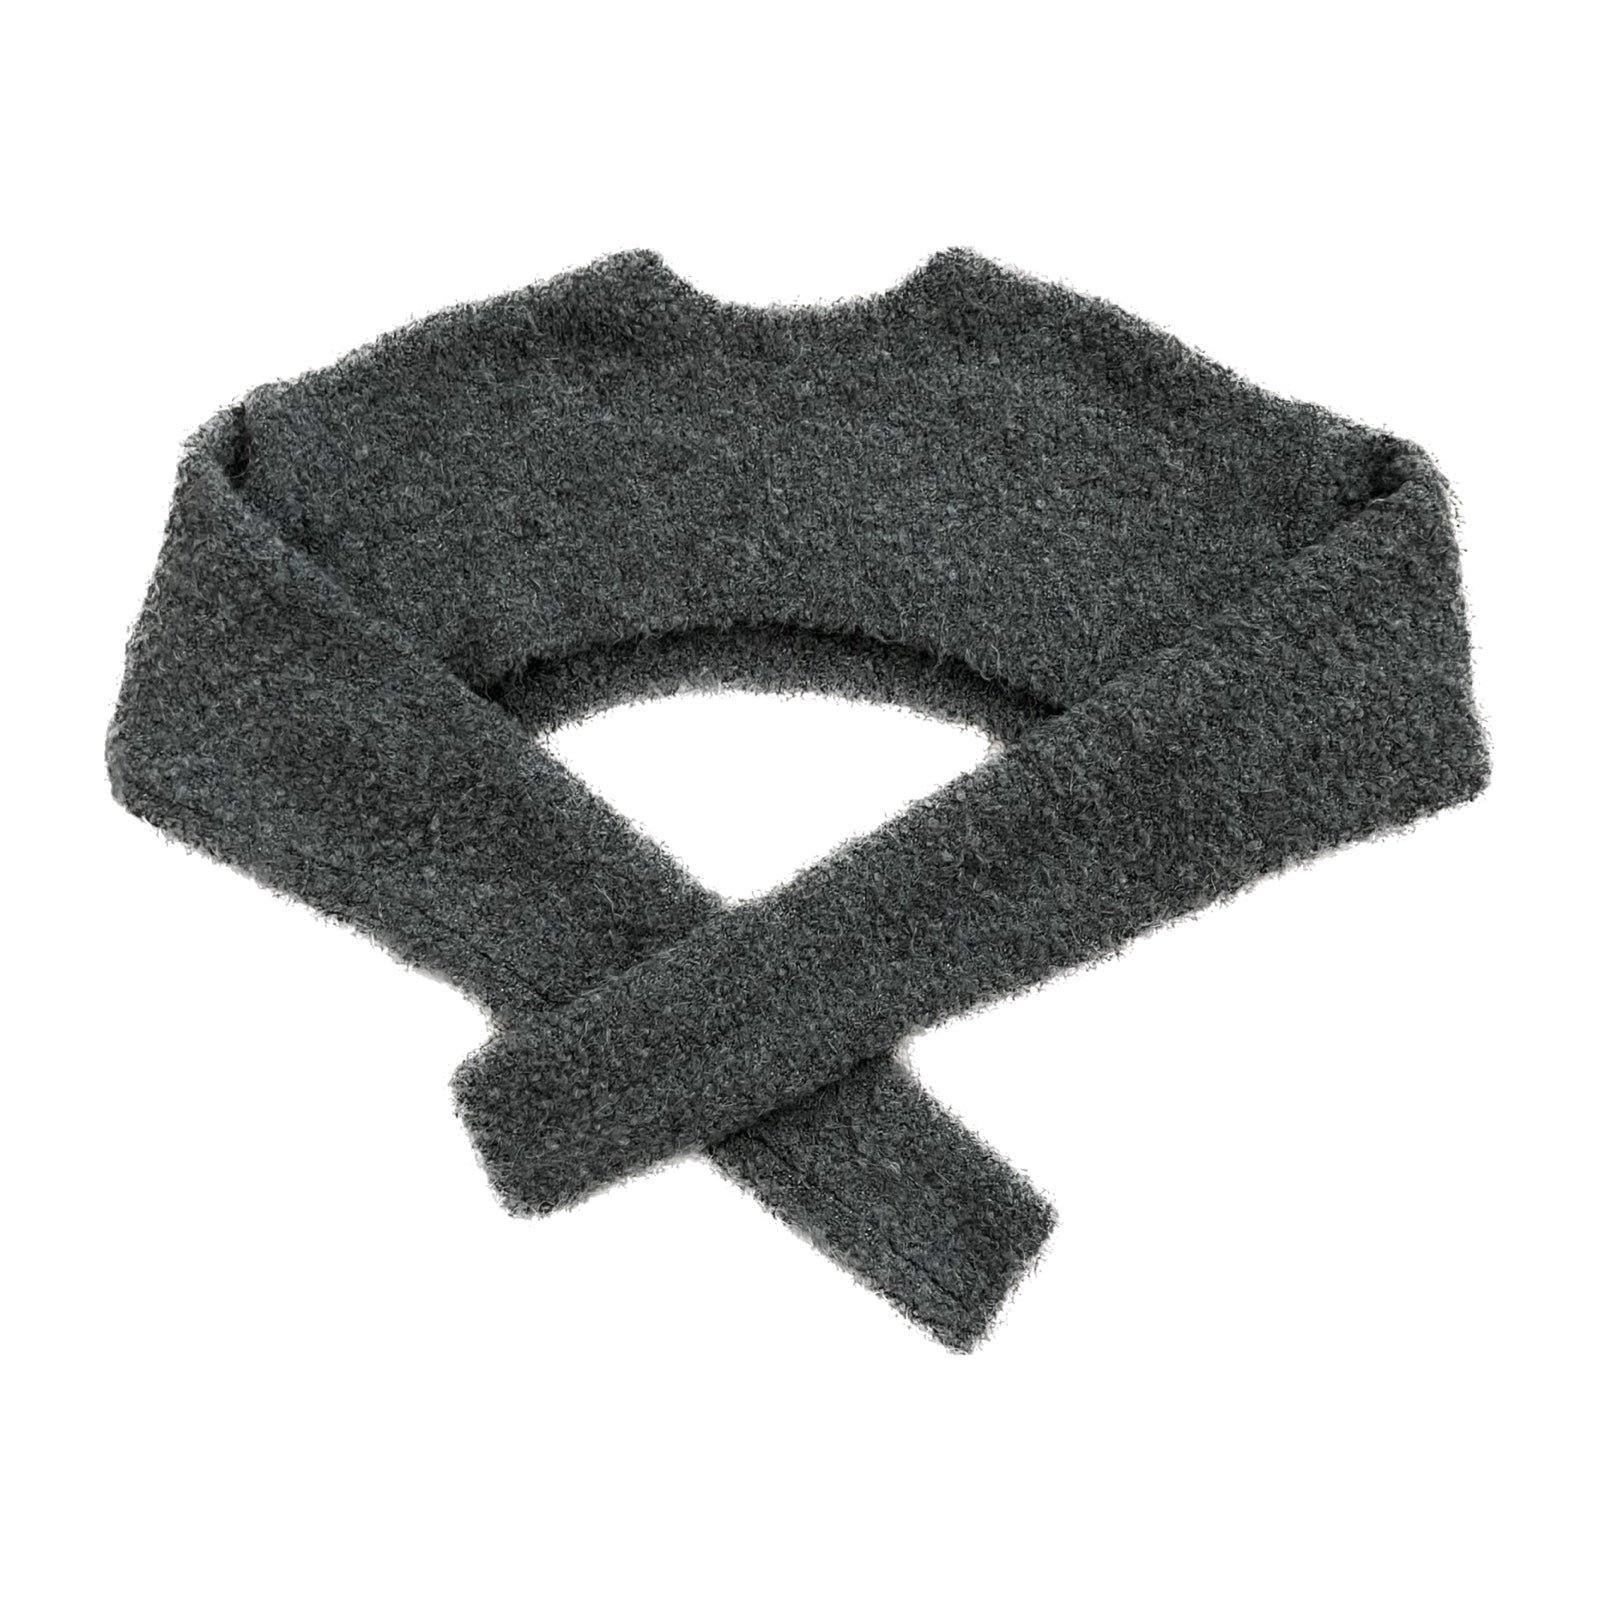 blackup grey bolero sweater top size xs bifyzGEm0